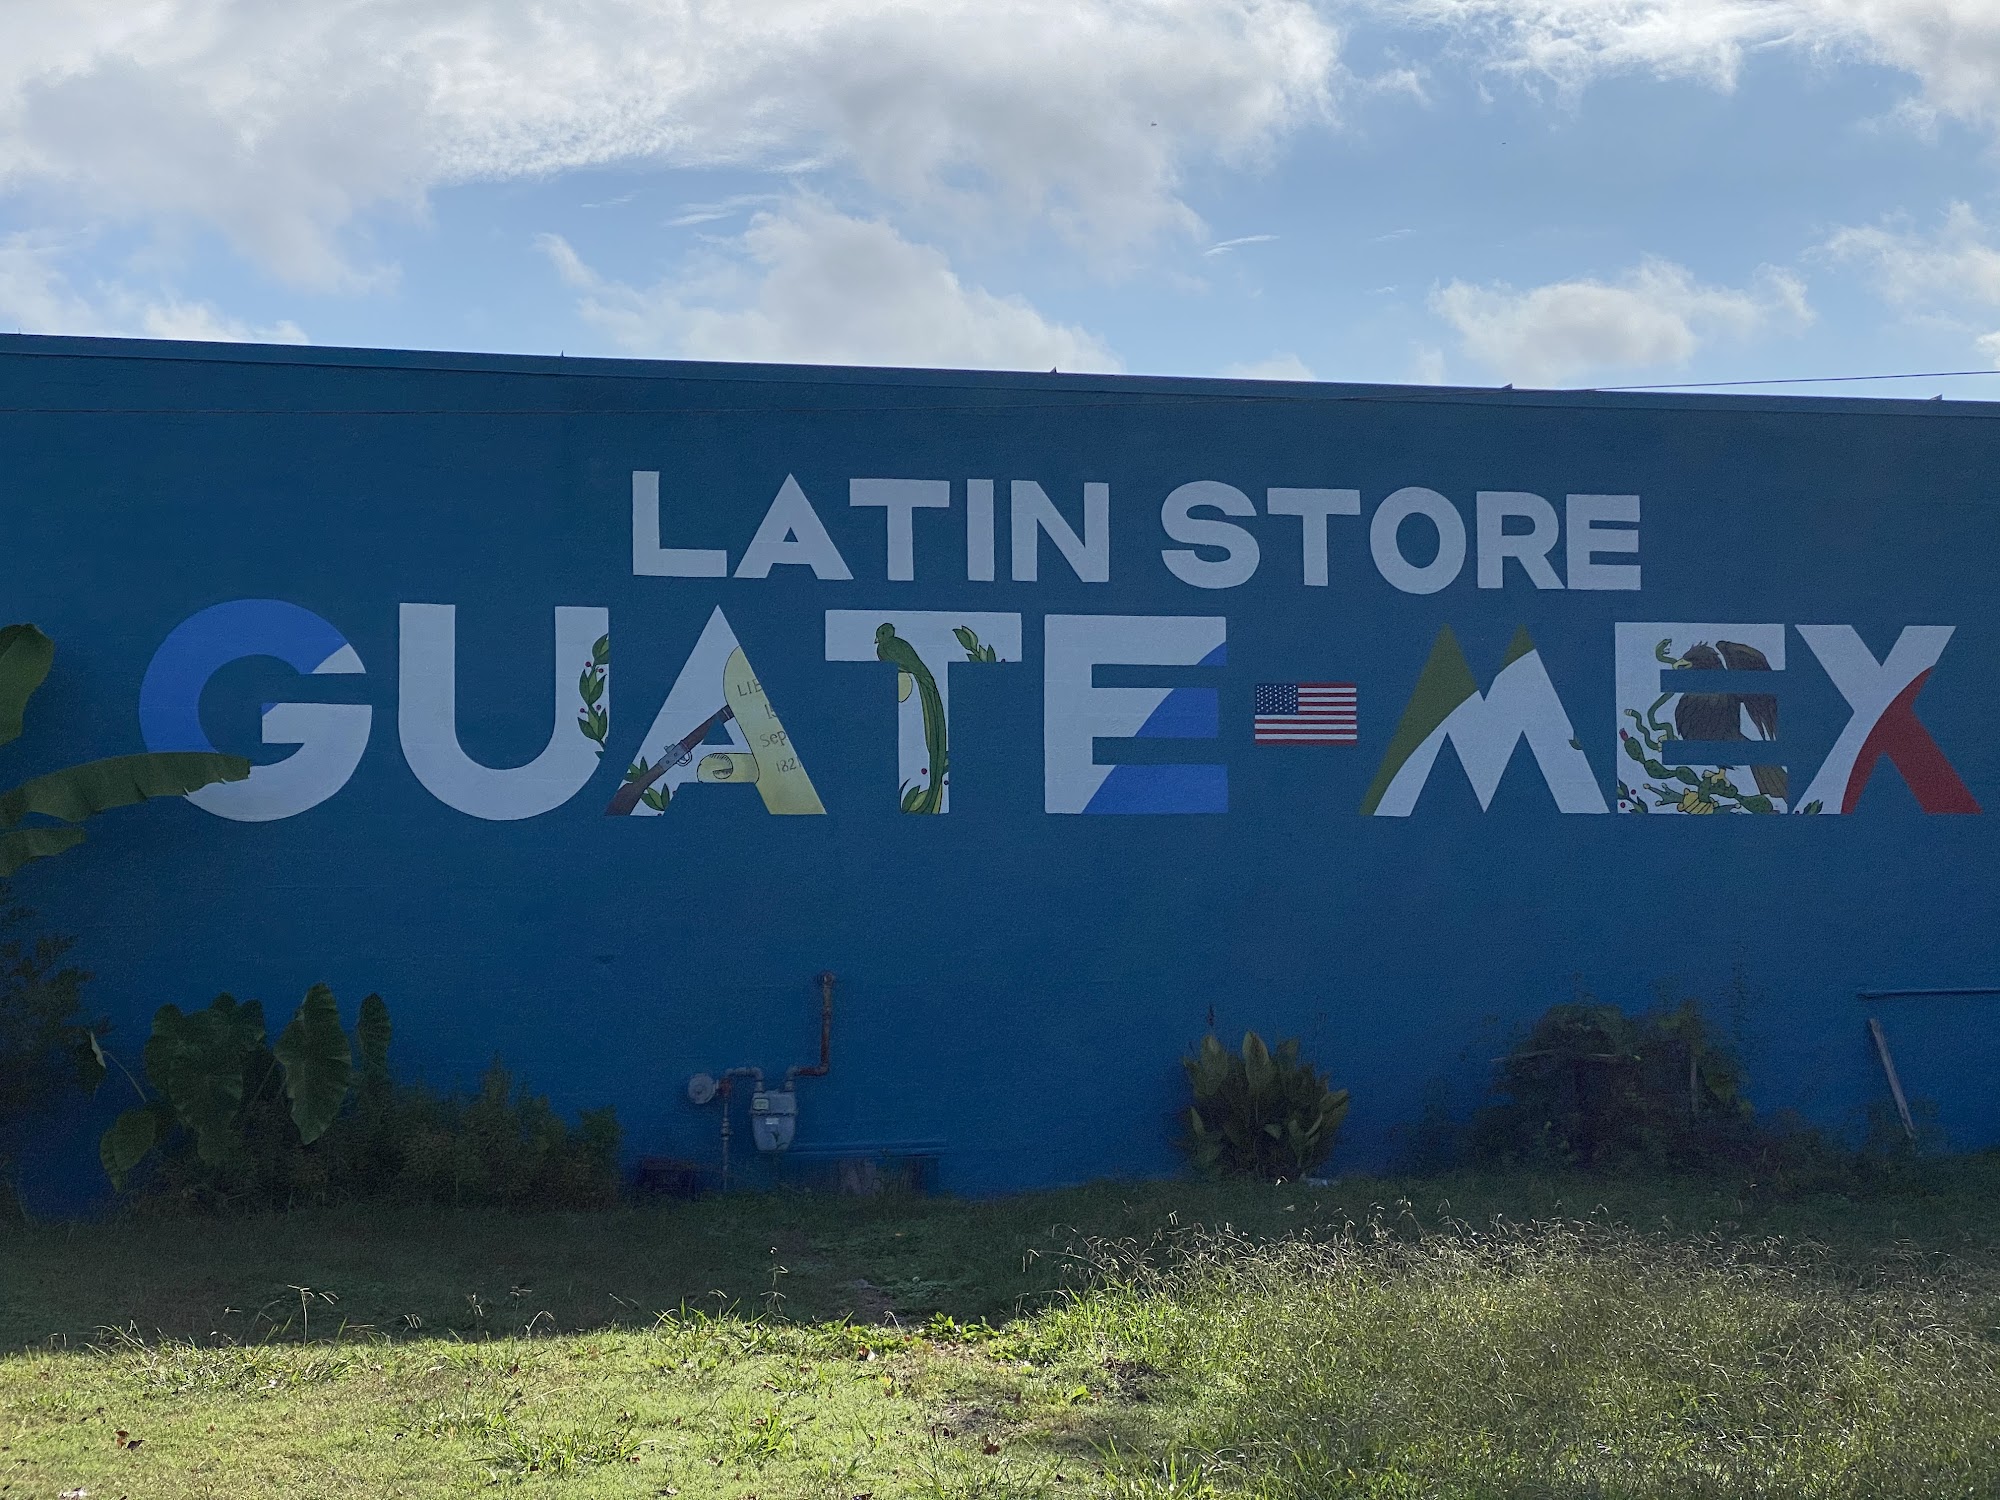 Guatemex